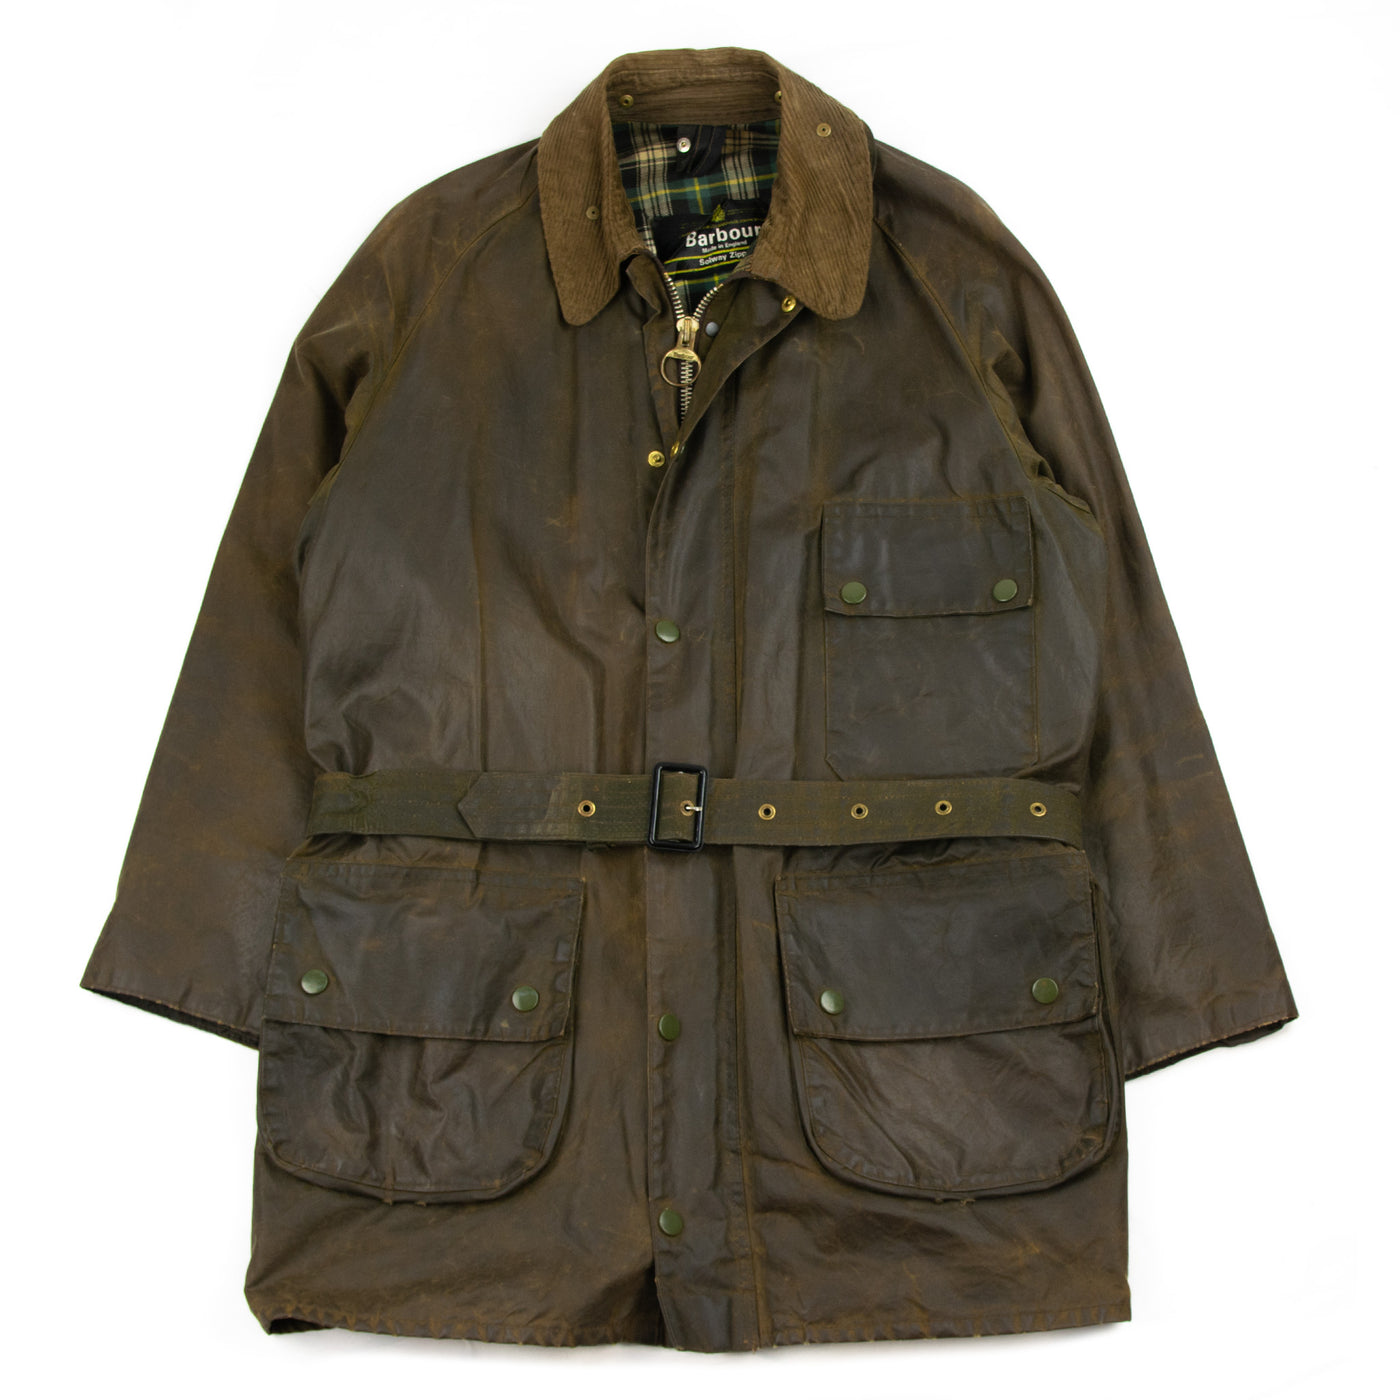 Vintage 1970s Barbour 1 Crest Solway Zipper Brown Wax Jacket Coat Made In England - L